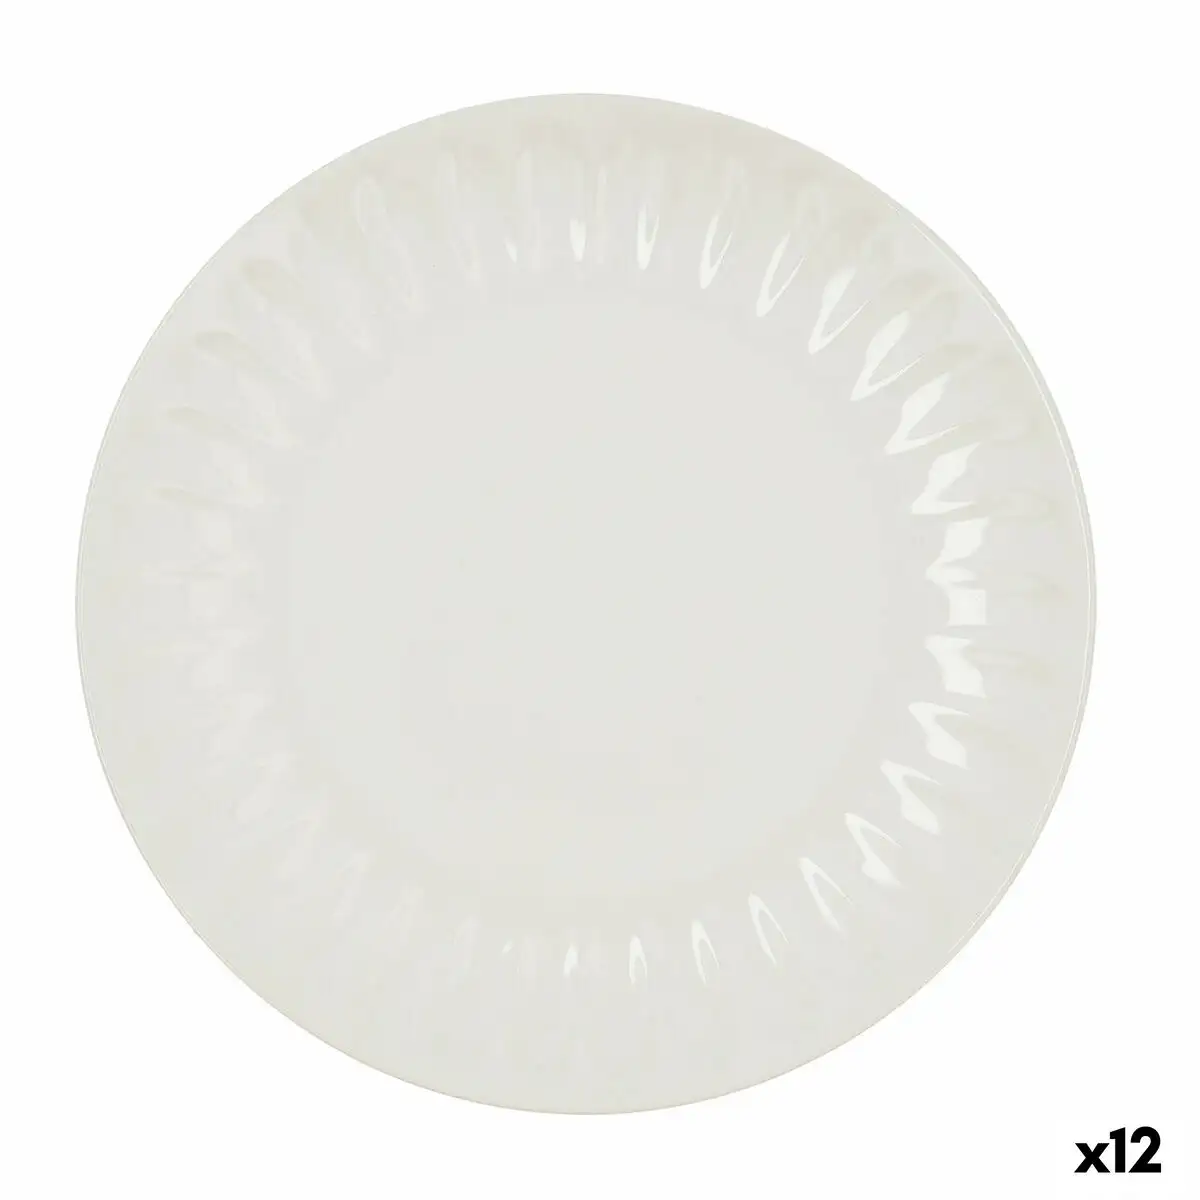 Assiette plate bidasoa romantic ivory ceramique blanc o 27 cm 12 unites _5972. DIAYTAR SENEGAL - L'Art de Vivre le Shopping Inspiré. Parcourez notre catalogue et choisissez des produits qui reflètent votre passion pour la beauté et l'authenticité.